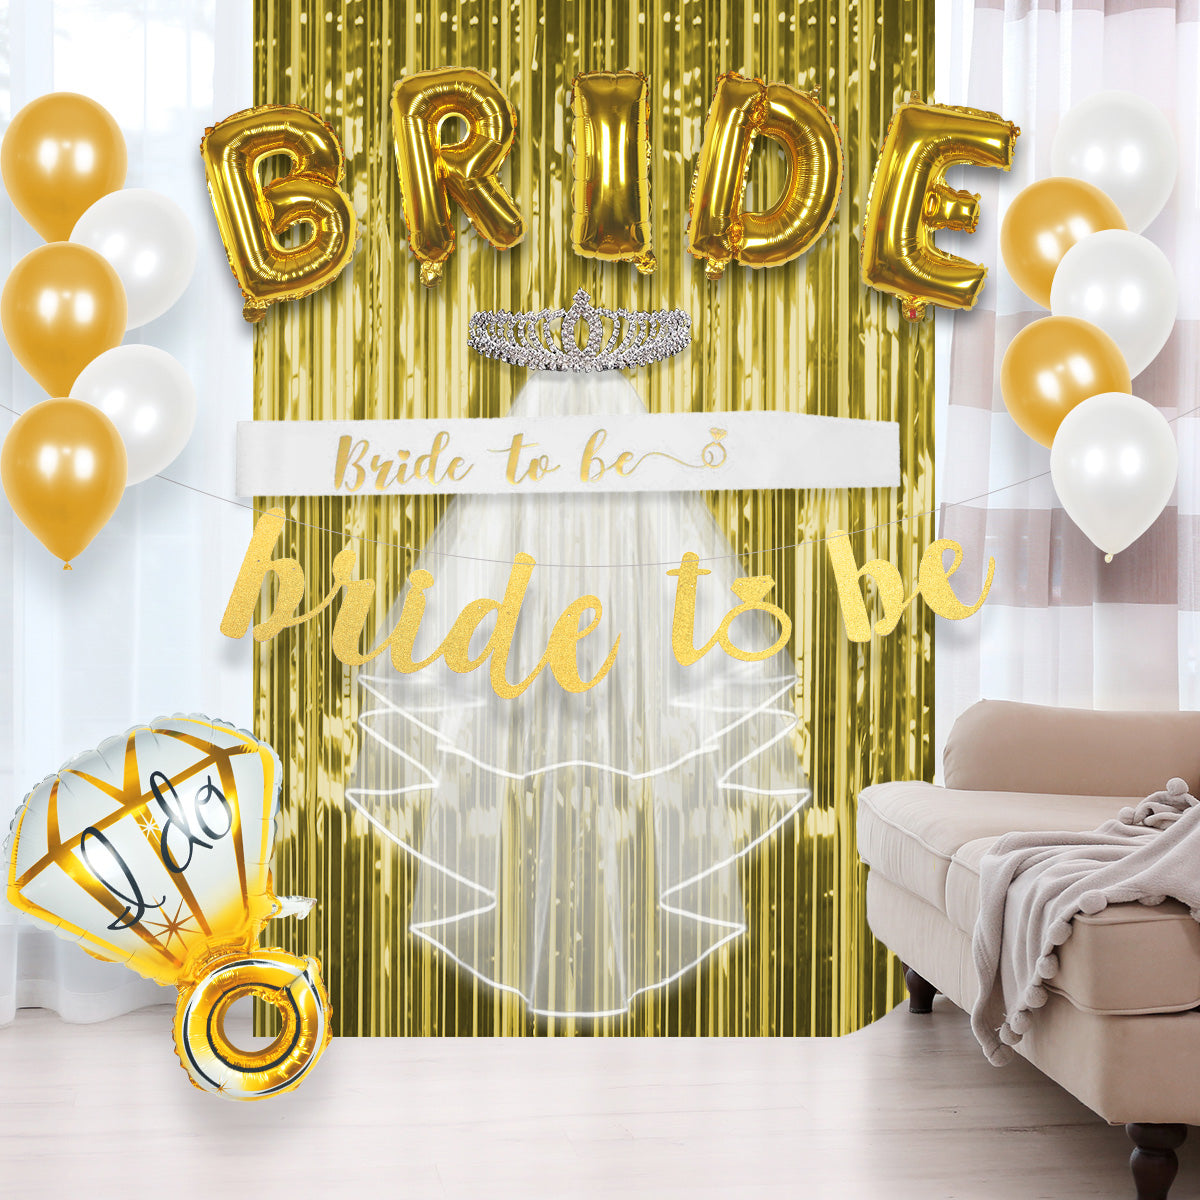 13+ Amazing Bridal Shower Decoration Ideas